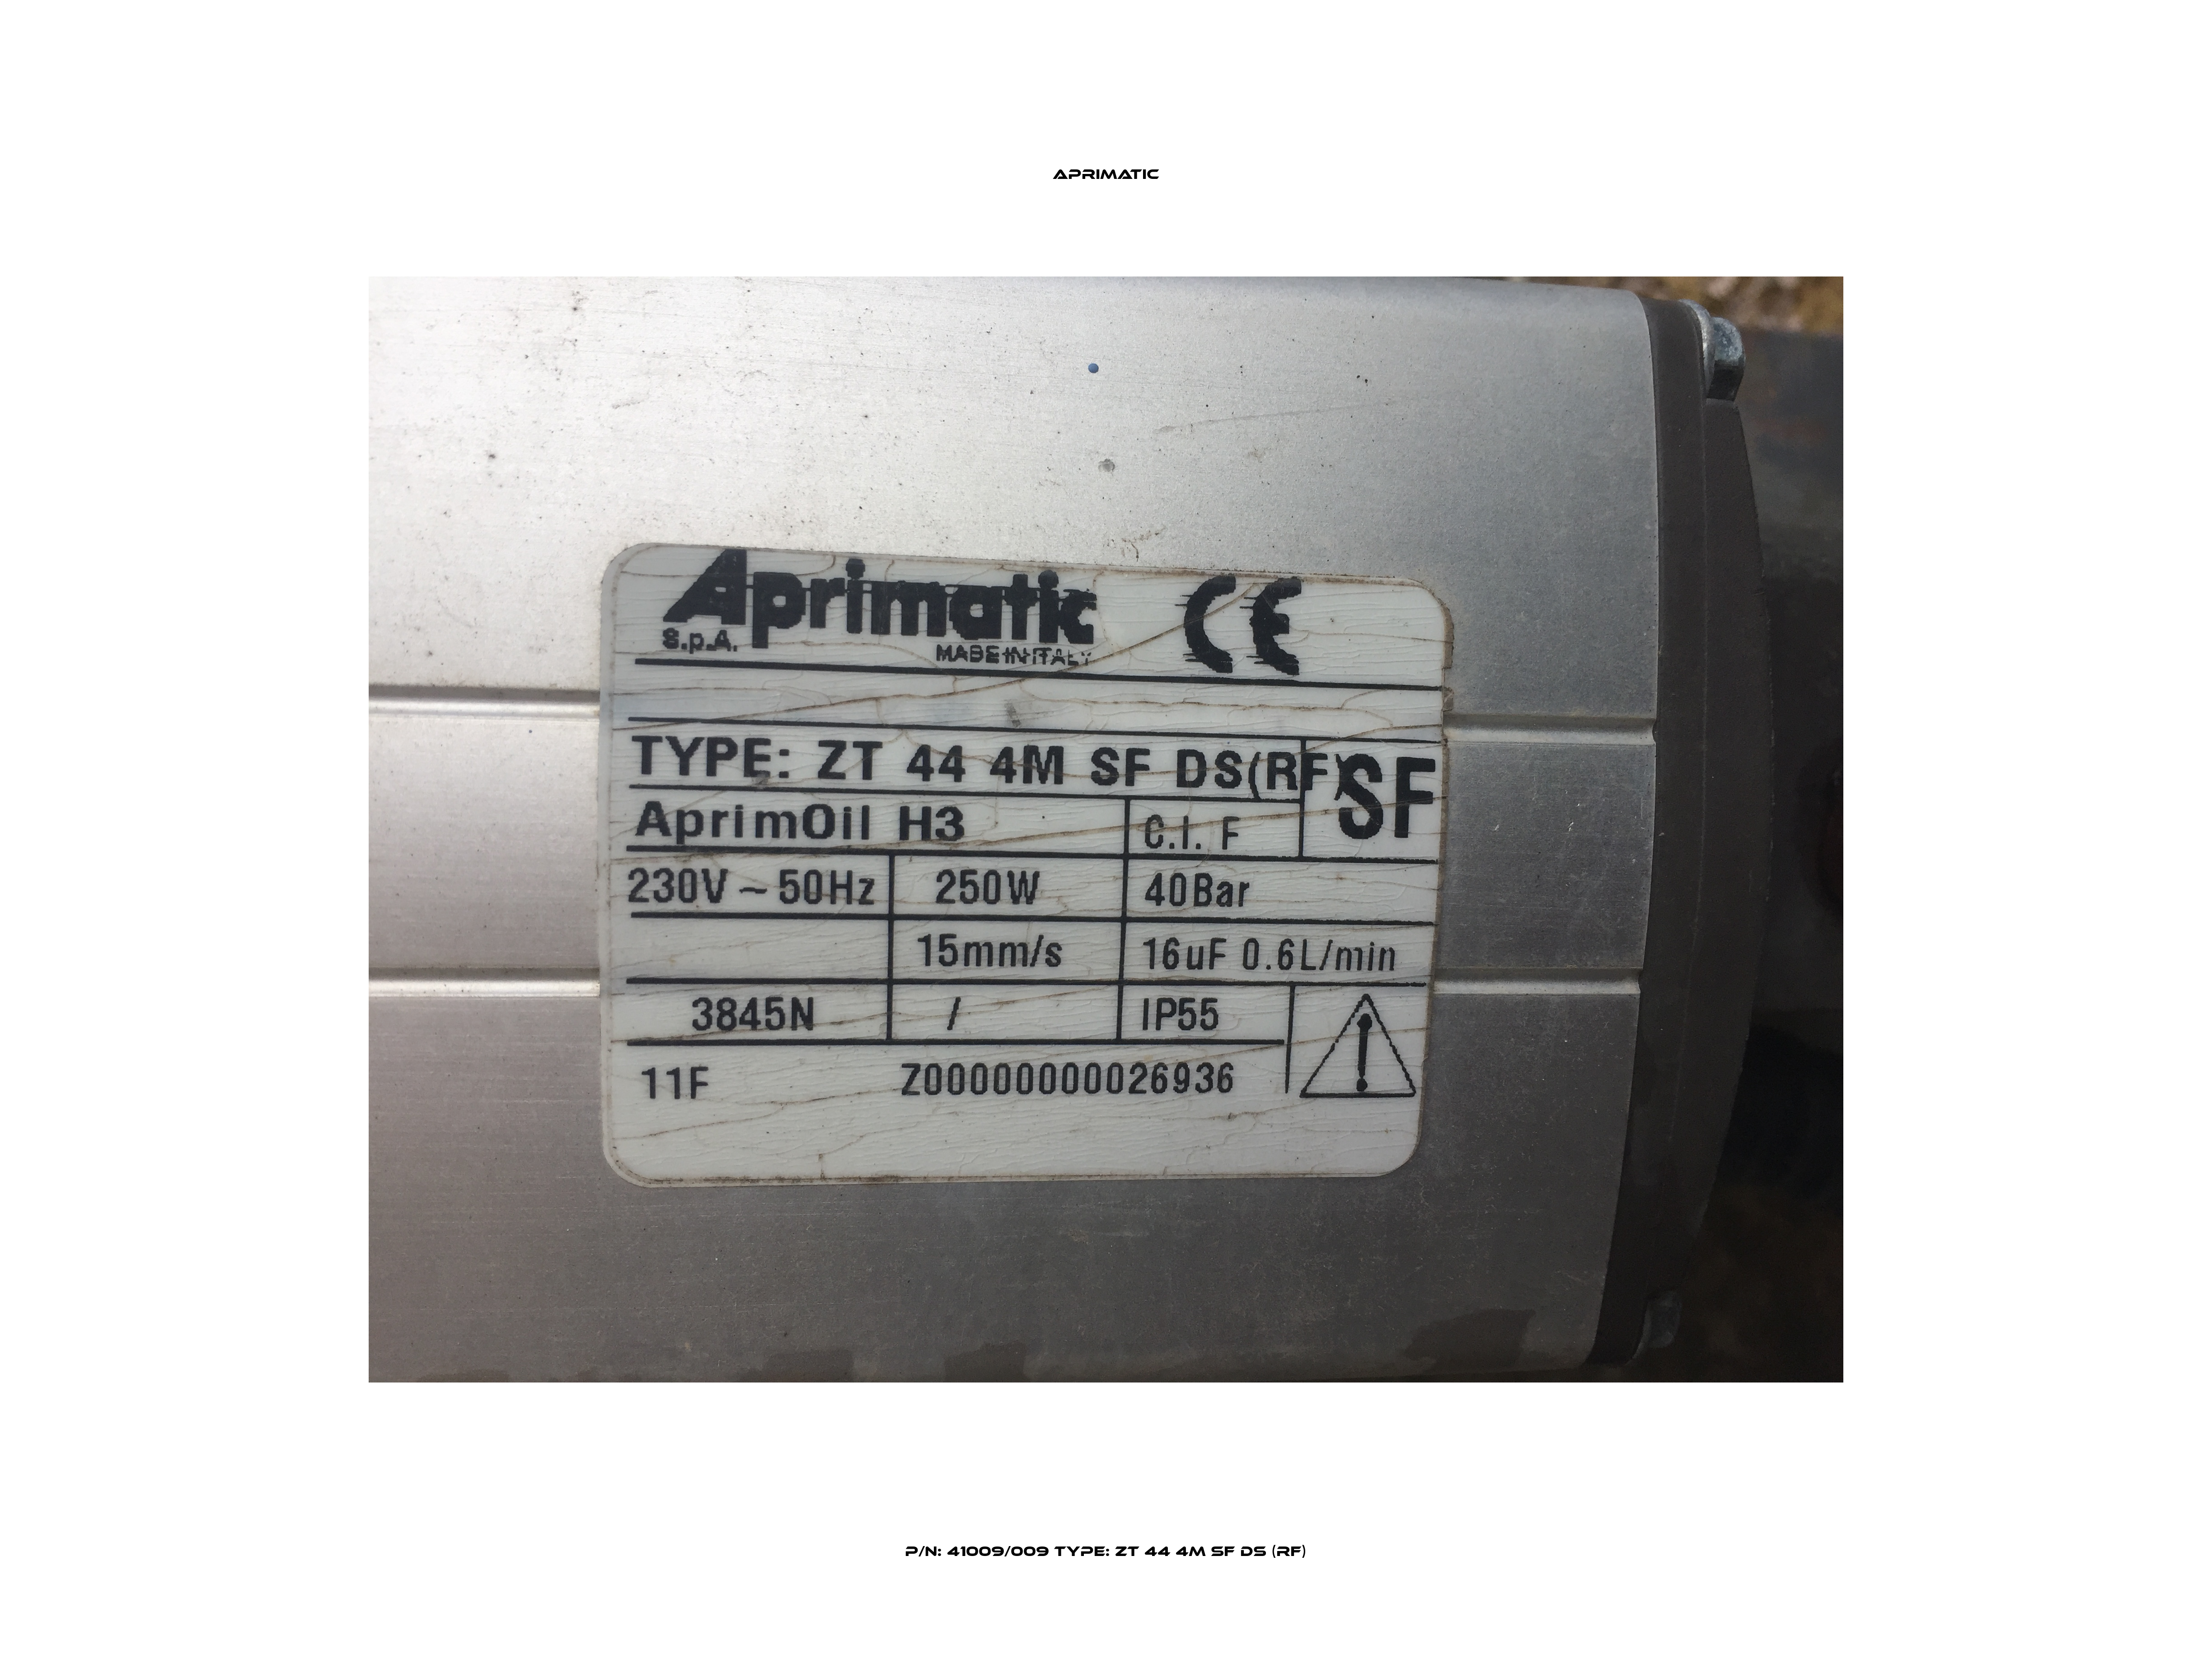 P/N: 41009/009 Type: ZT 44 4M SF DS (RF) Aprimatic